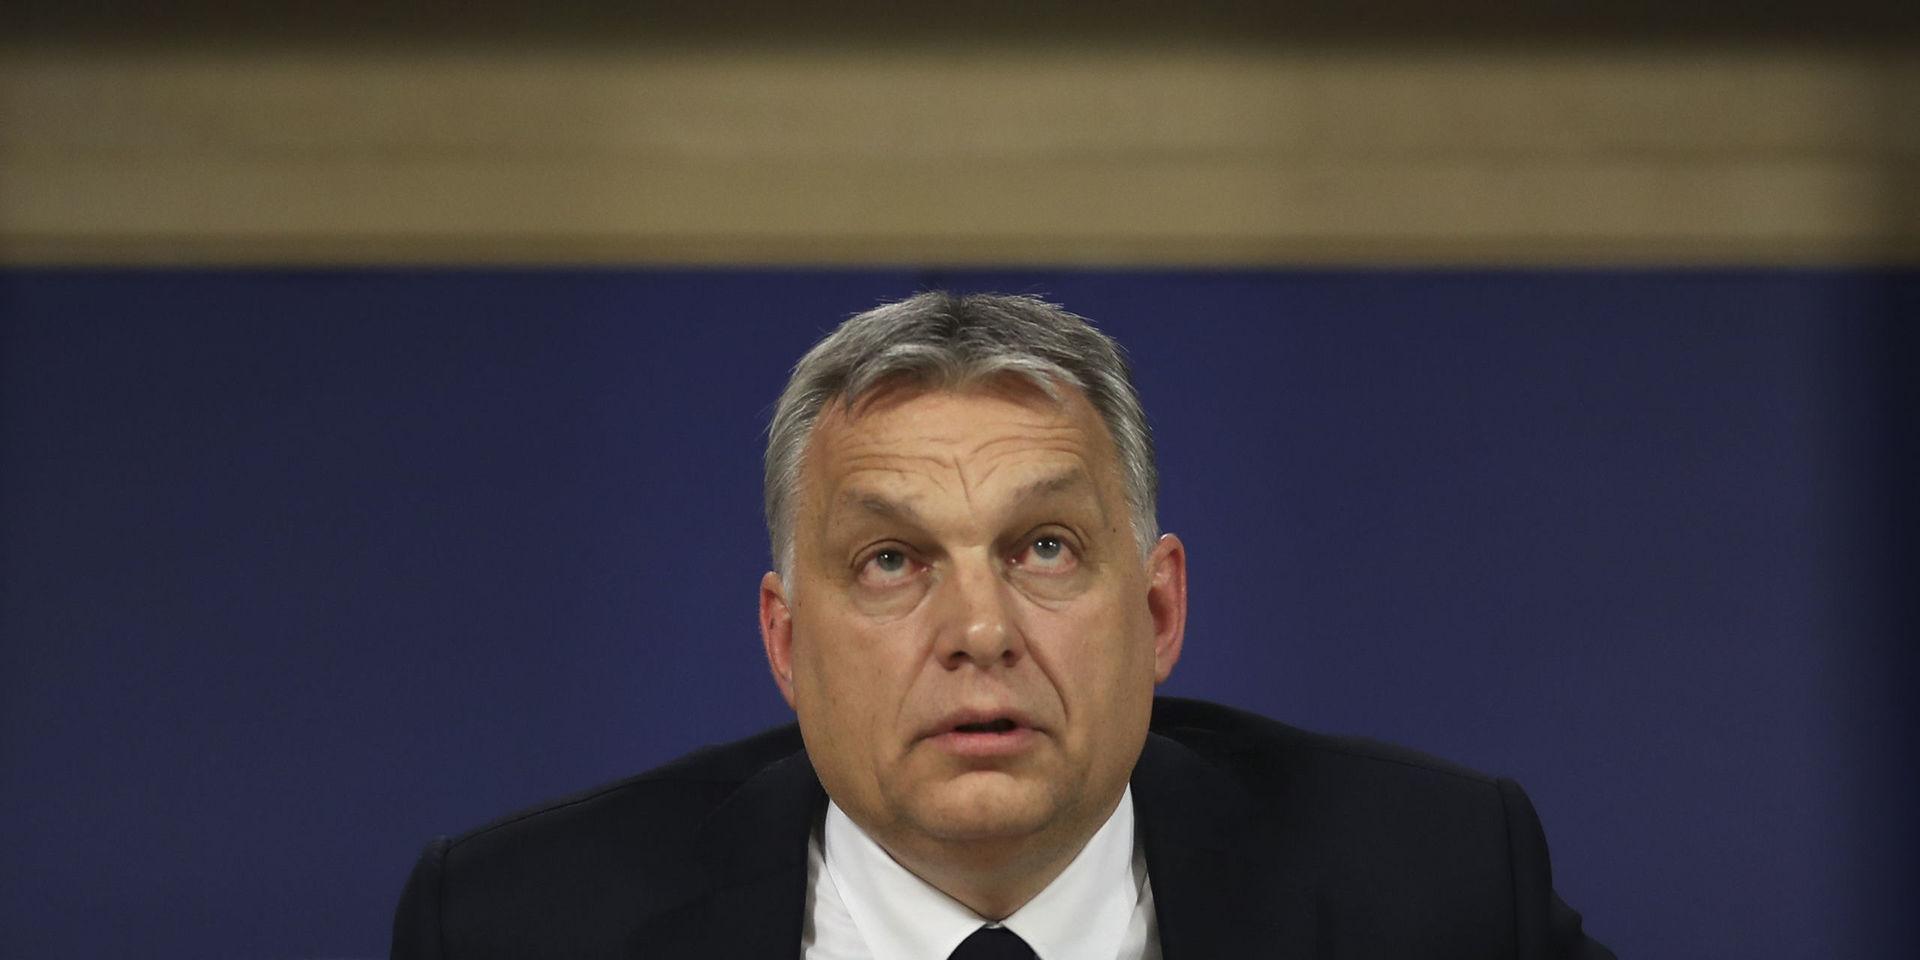 Ungerns premiärminister  Viktor Orbán håller presskonferens efter att EPP haft gruppmöte i EU-parlamentet under onsdag 20 mars, där gruppen beslutat att stänga av Orbáns parti Fidesz.